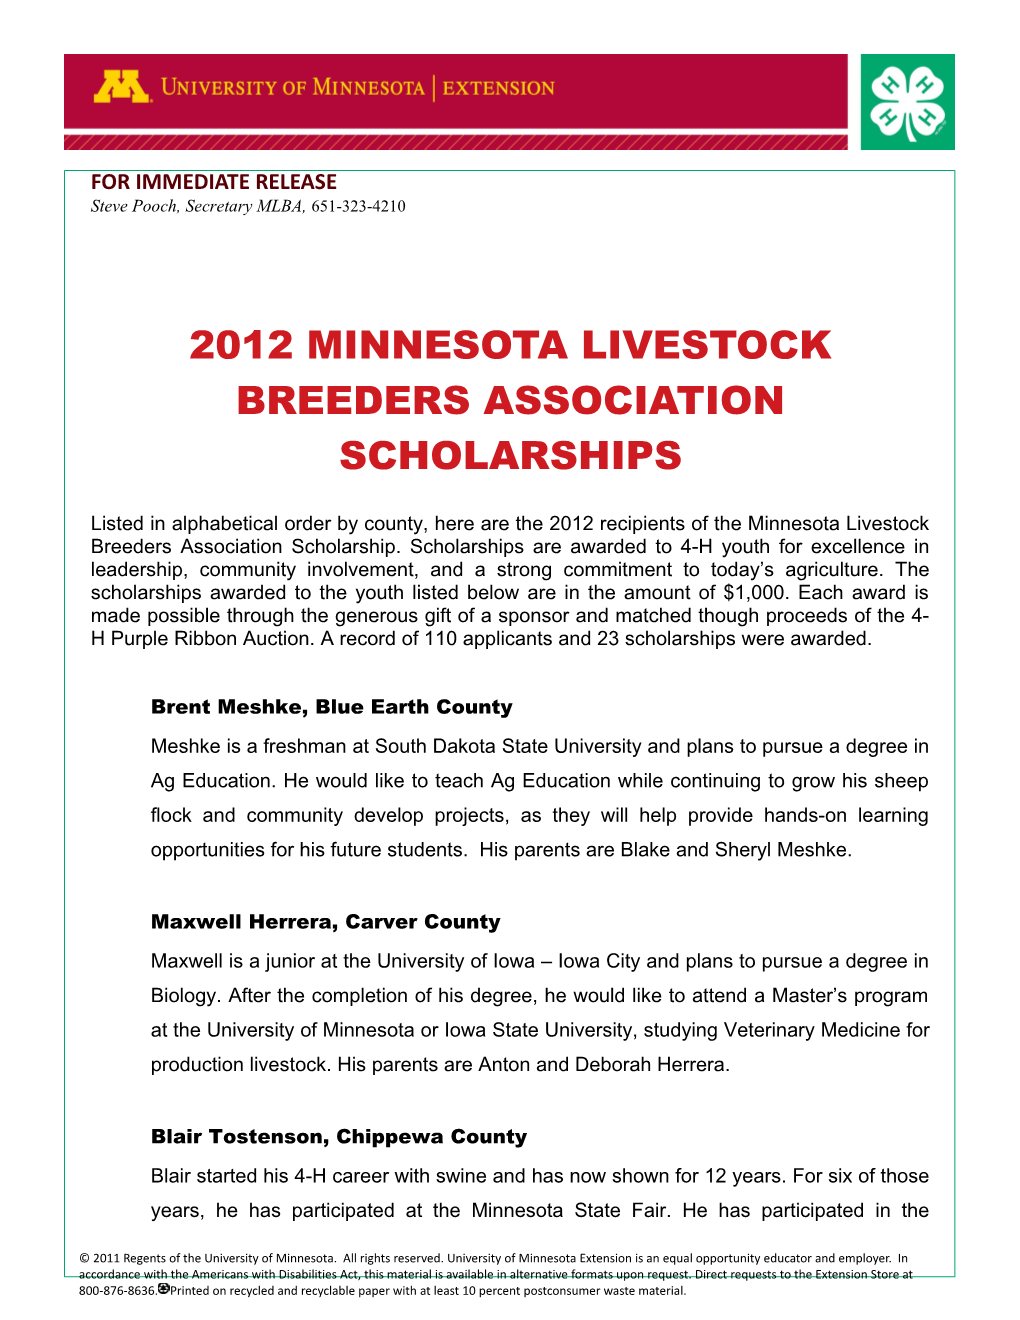 2012 Minnesota Livestock Breeders Association Scholarships